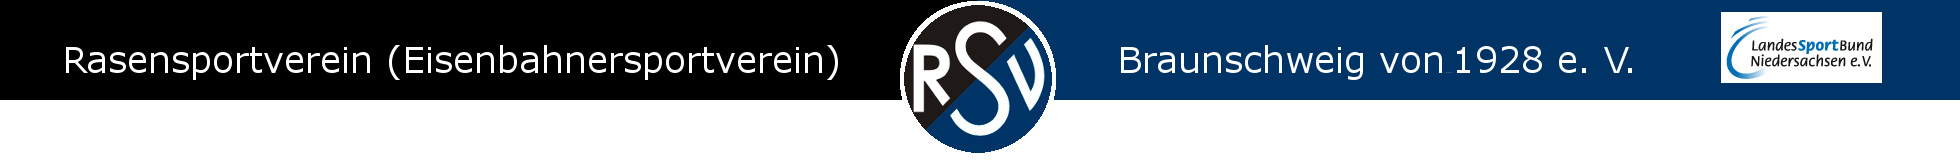 RSV Braunschweig von 1928 e. V.